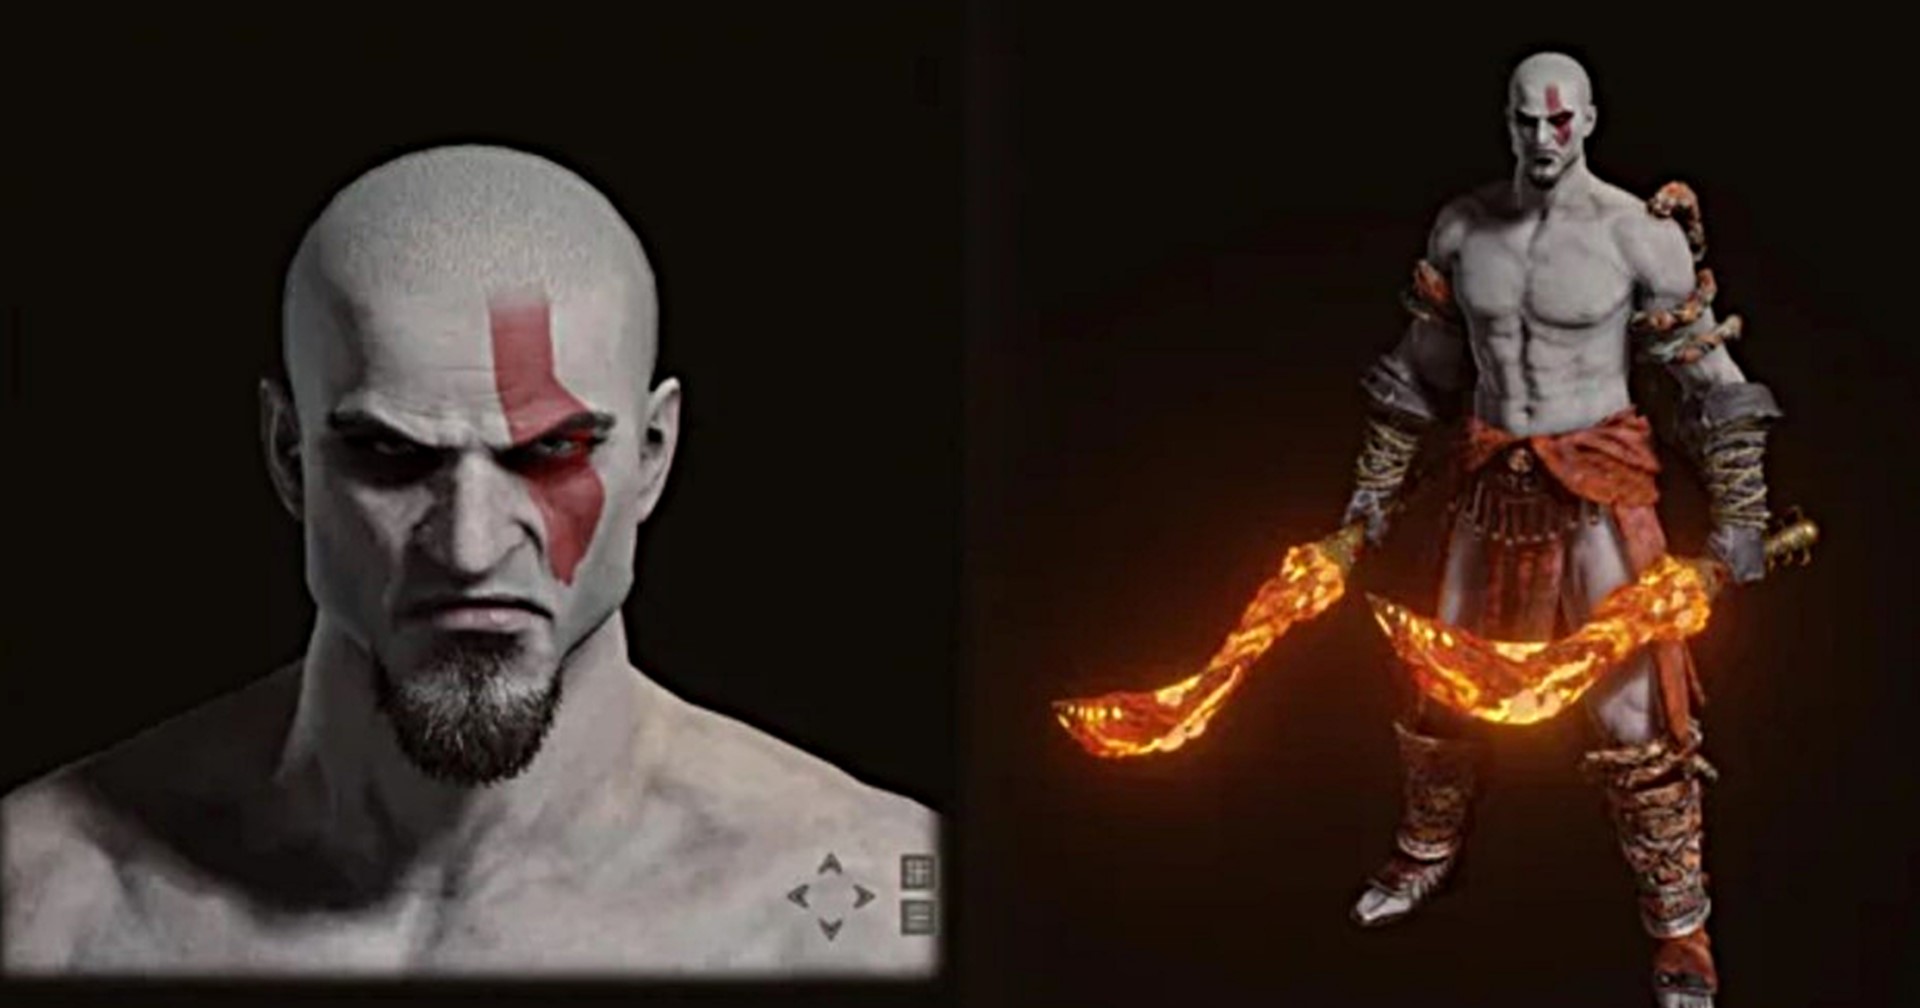 แฟนเกมสร้าง Kratos จาก God Of War ในเกม Elden Ring ที่มาครบทั้งหน้าตาและอาวุธ